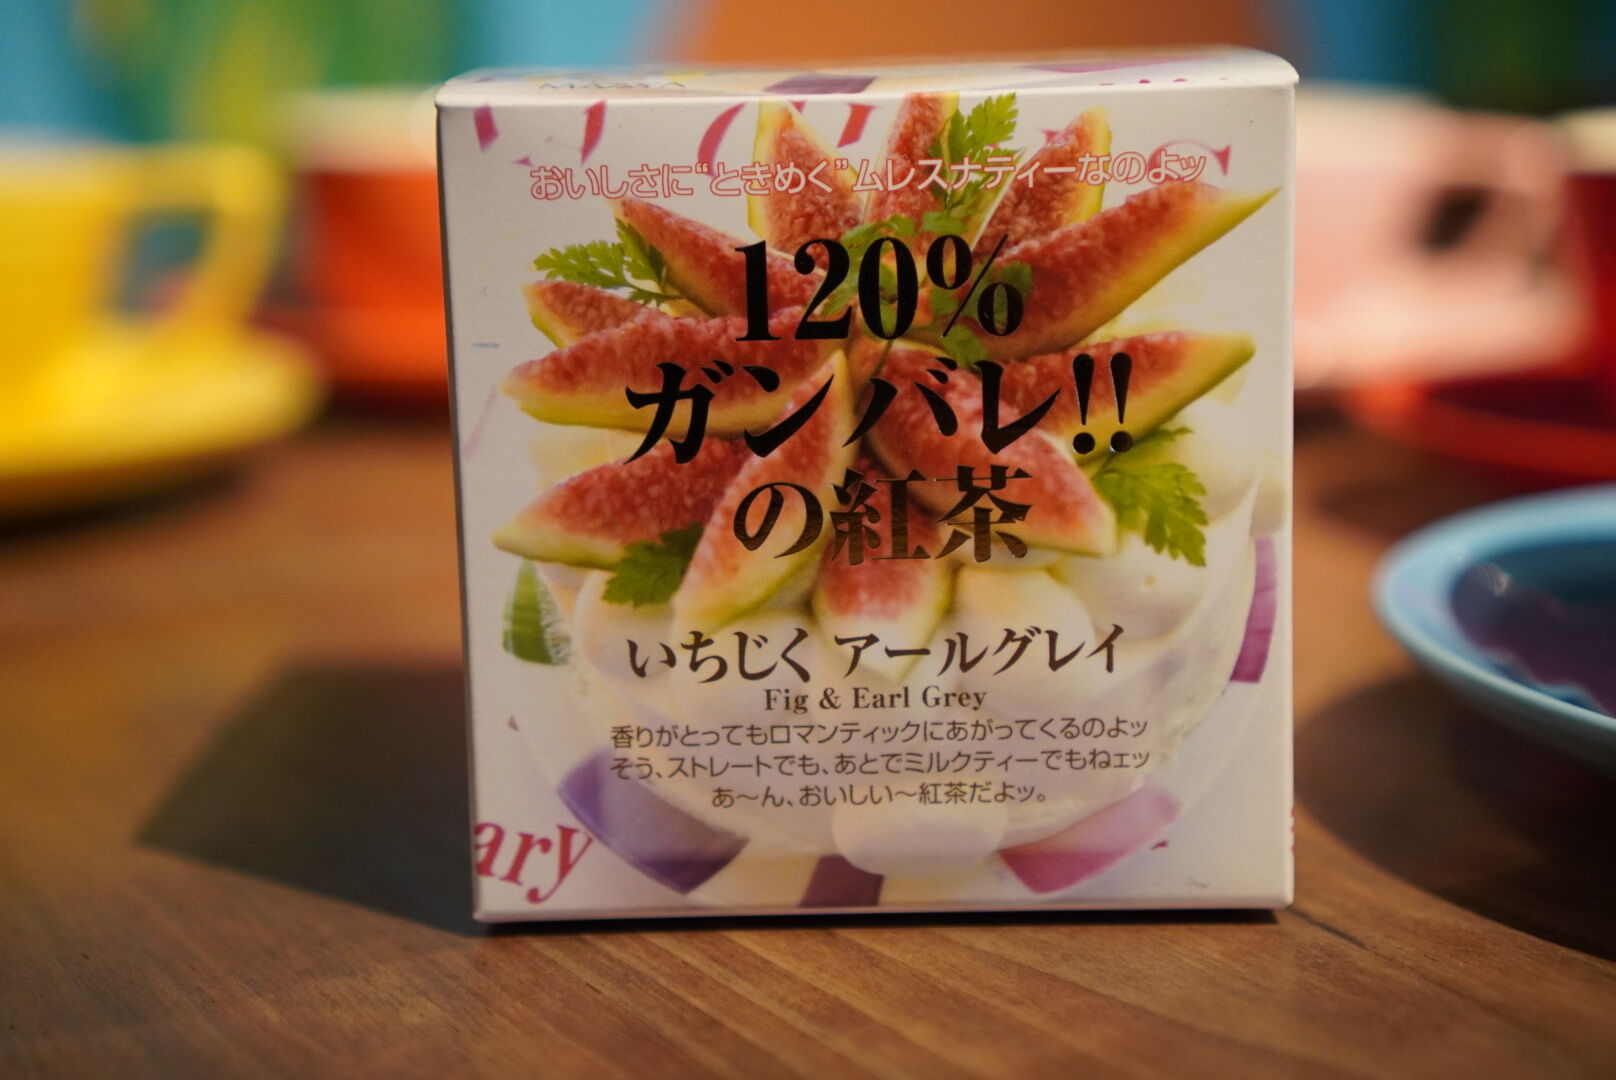 紅茶 ムレスナティー いちじくアールグレイ 120%ガンバレ!!の紅茶